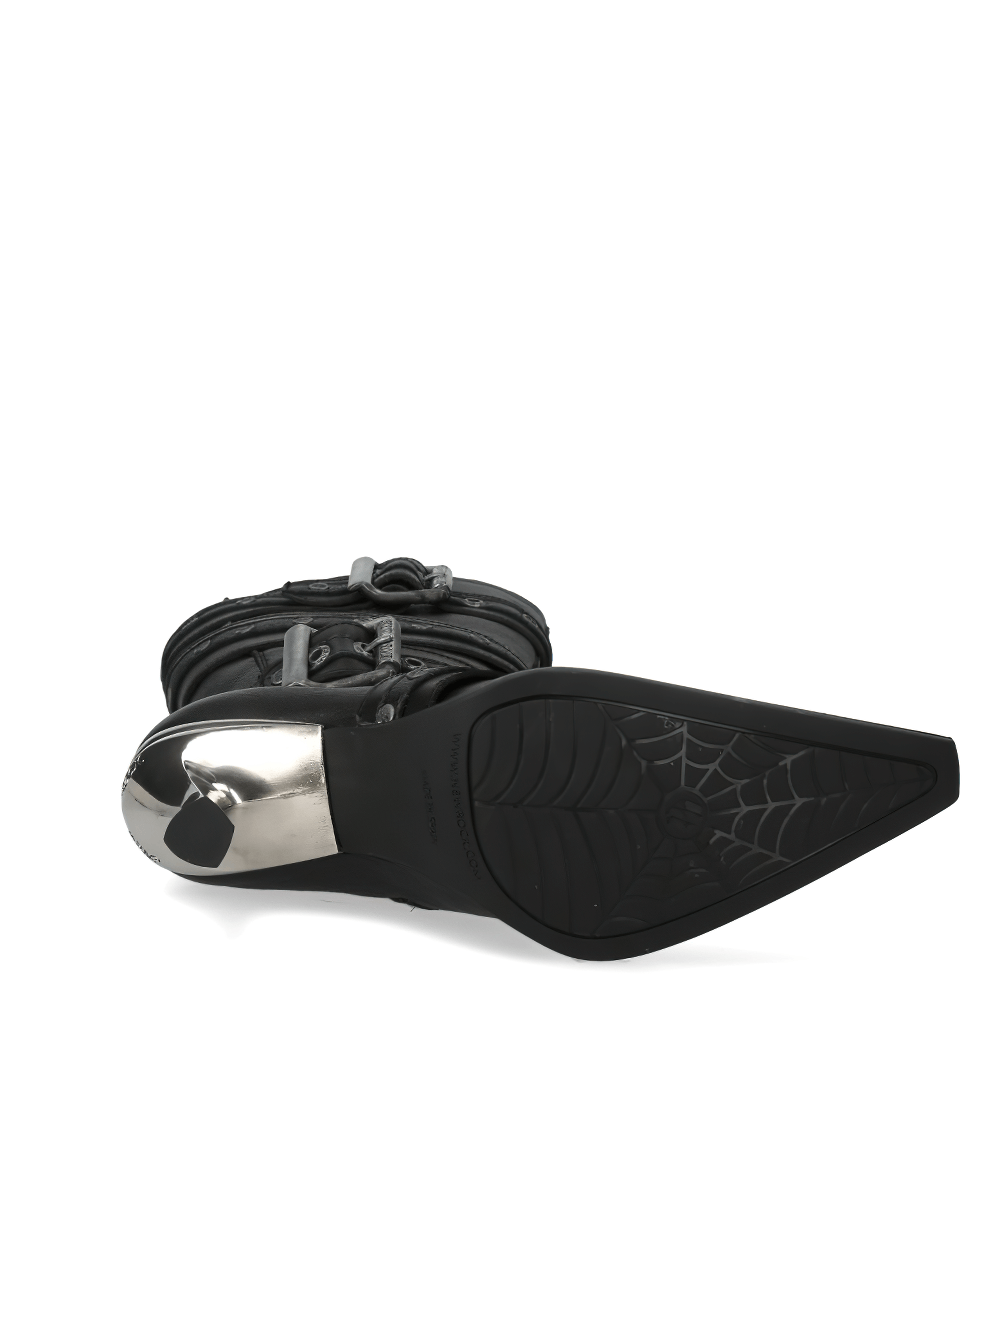 NEW ROCK High Heel-Stiefel aus schwarzem Leder mit Riemendetail